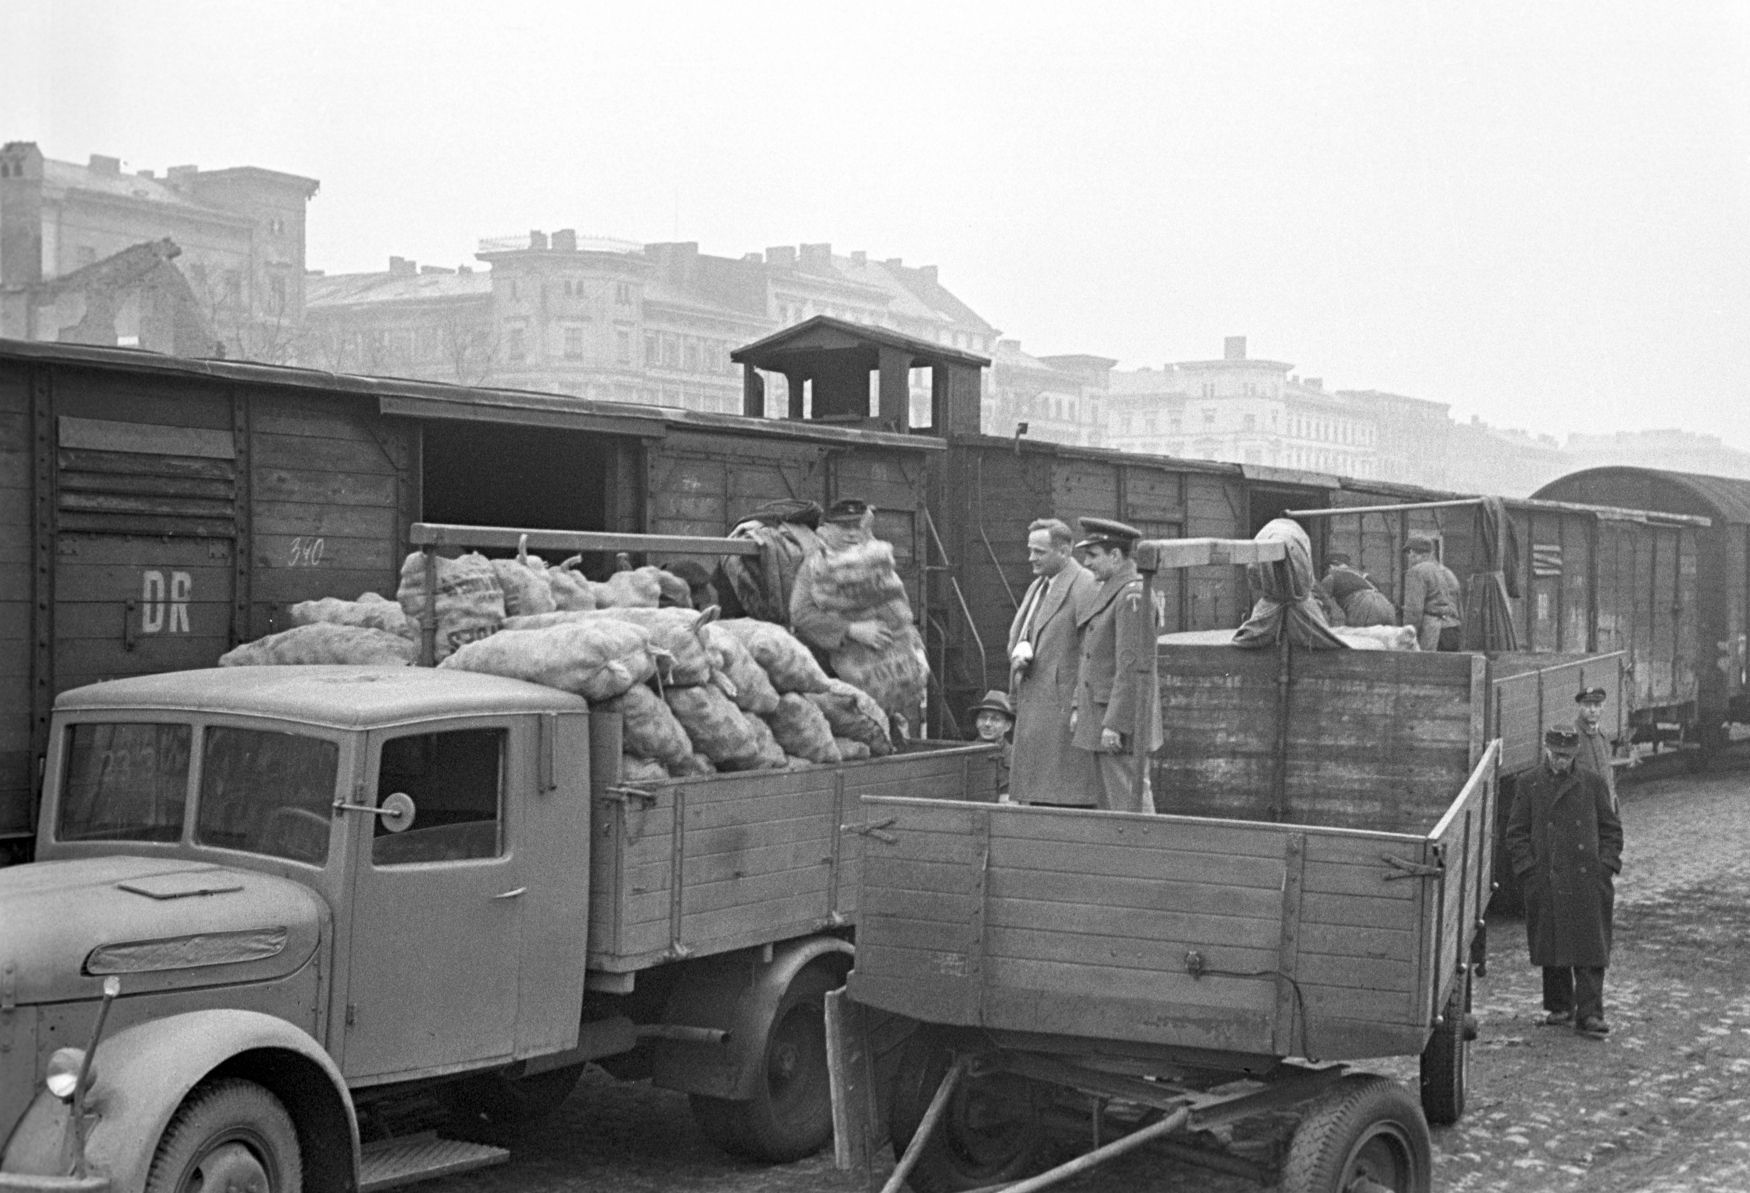 Fotogalerie / Blokáda Berlína 24.6. 1948 / 70. let výročí / ČTK /  19